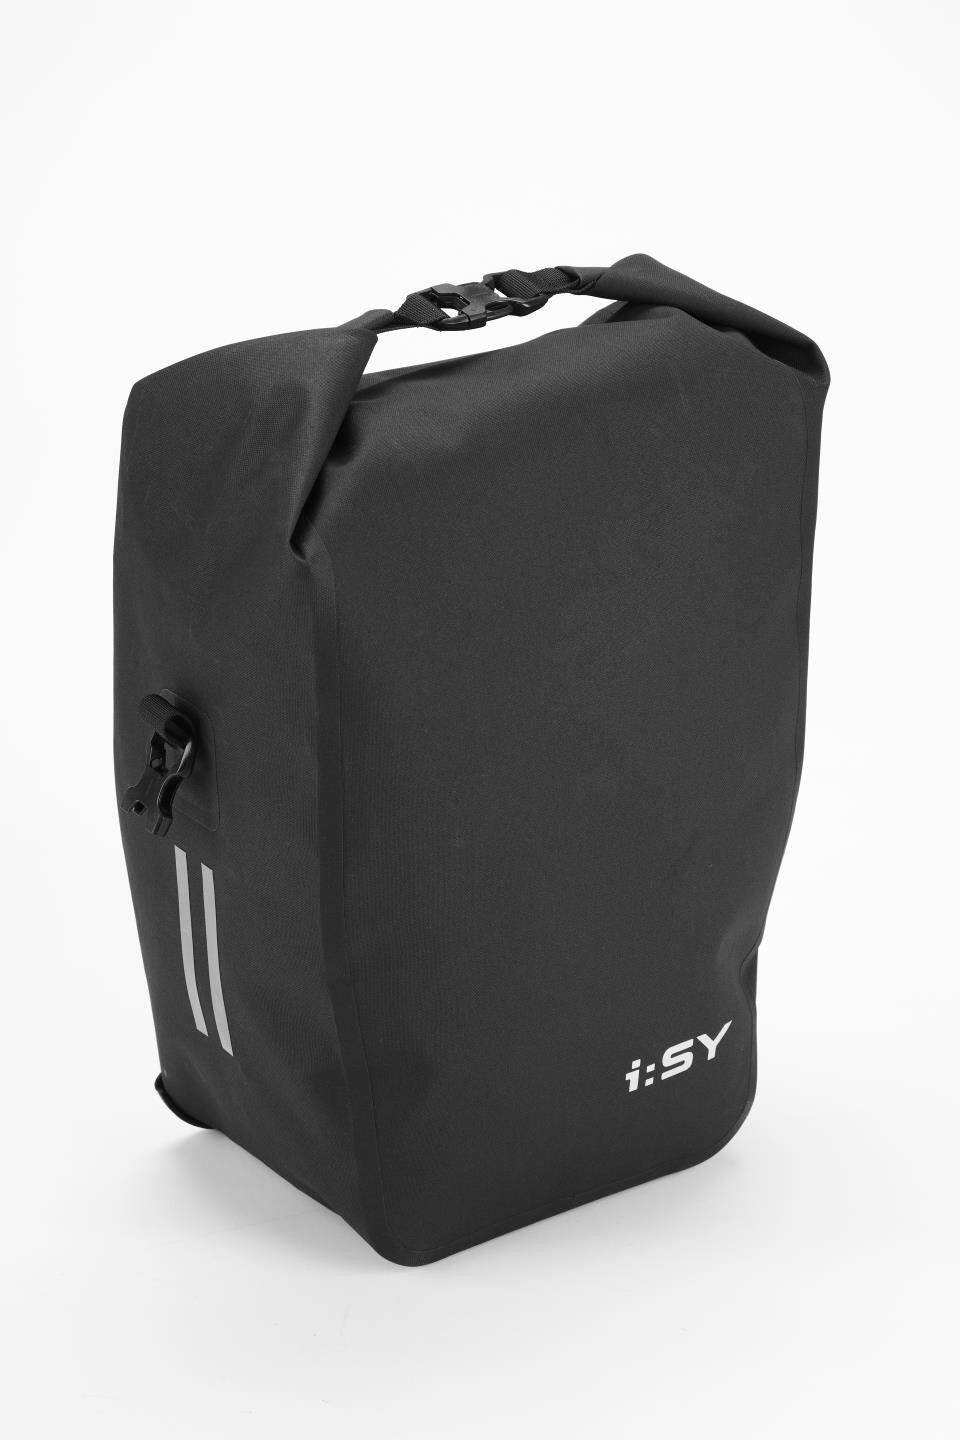 iSY wasserdichte Gepäckträger-Tasche groß